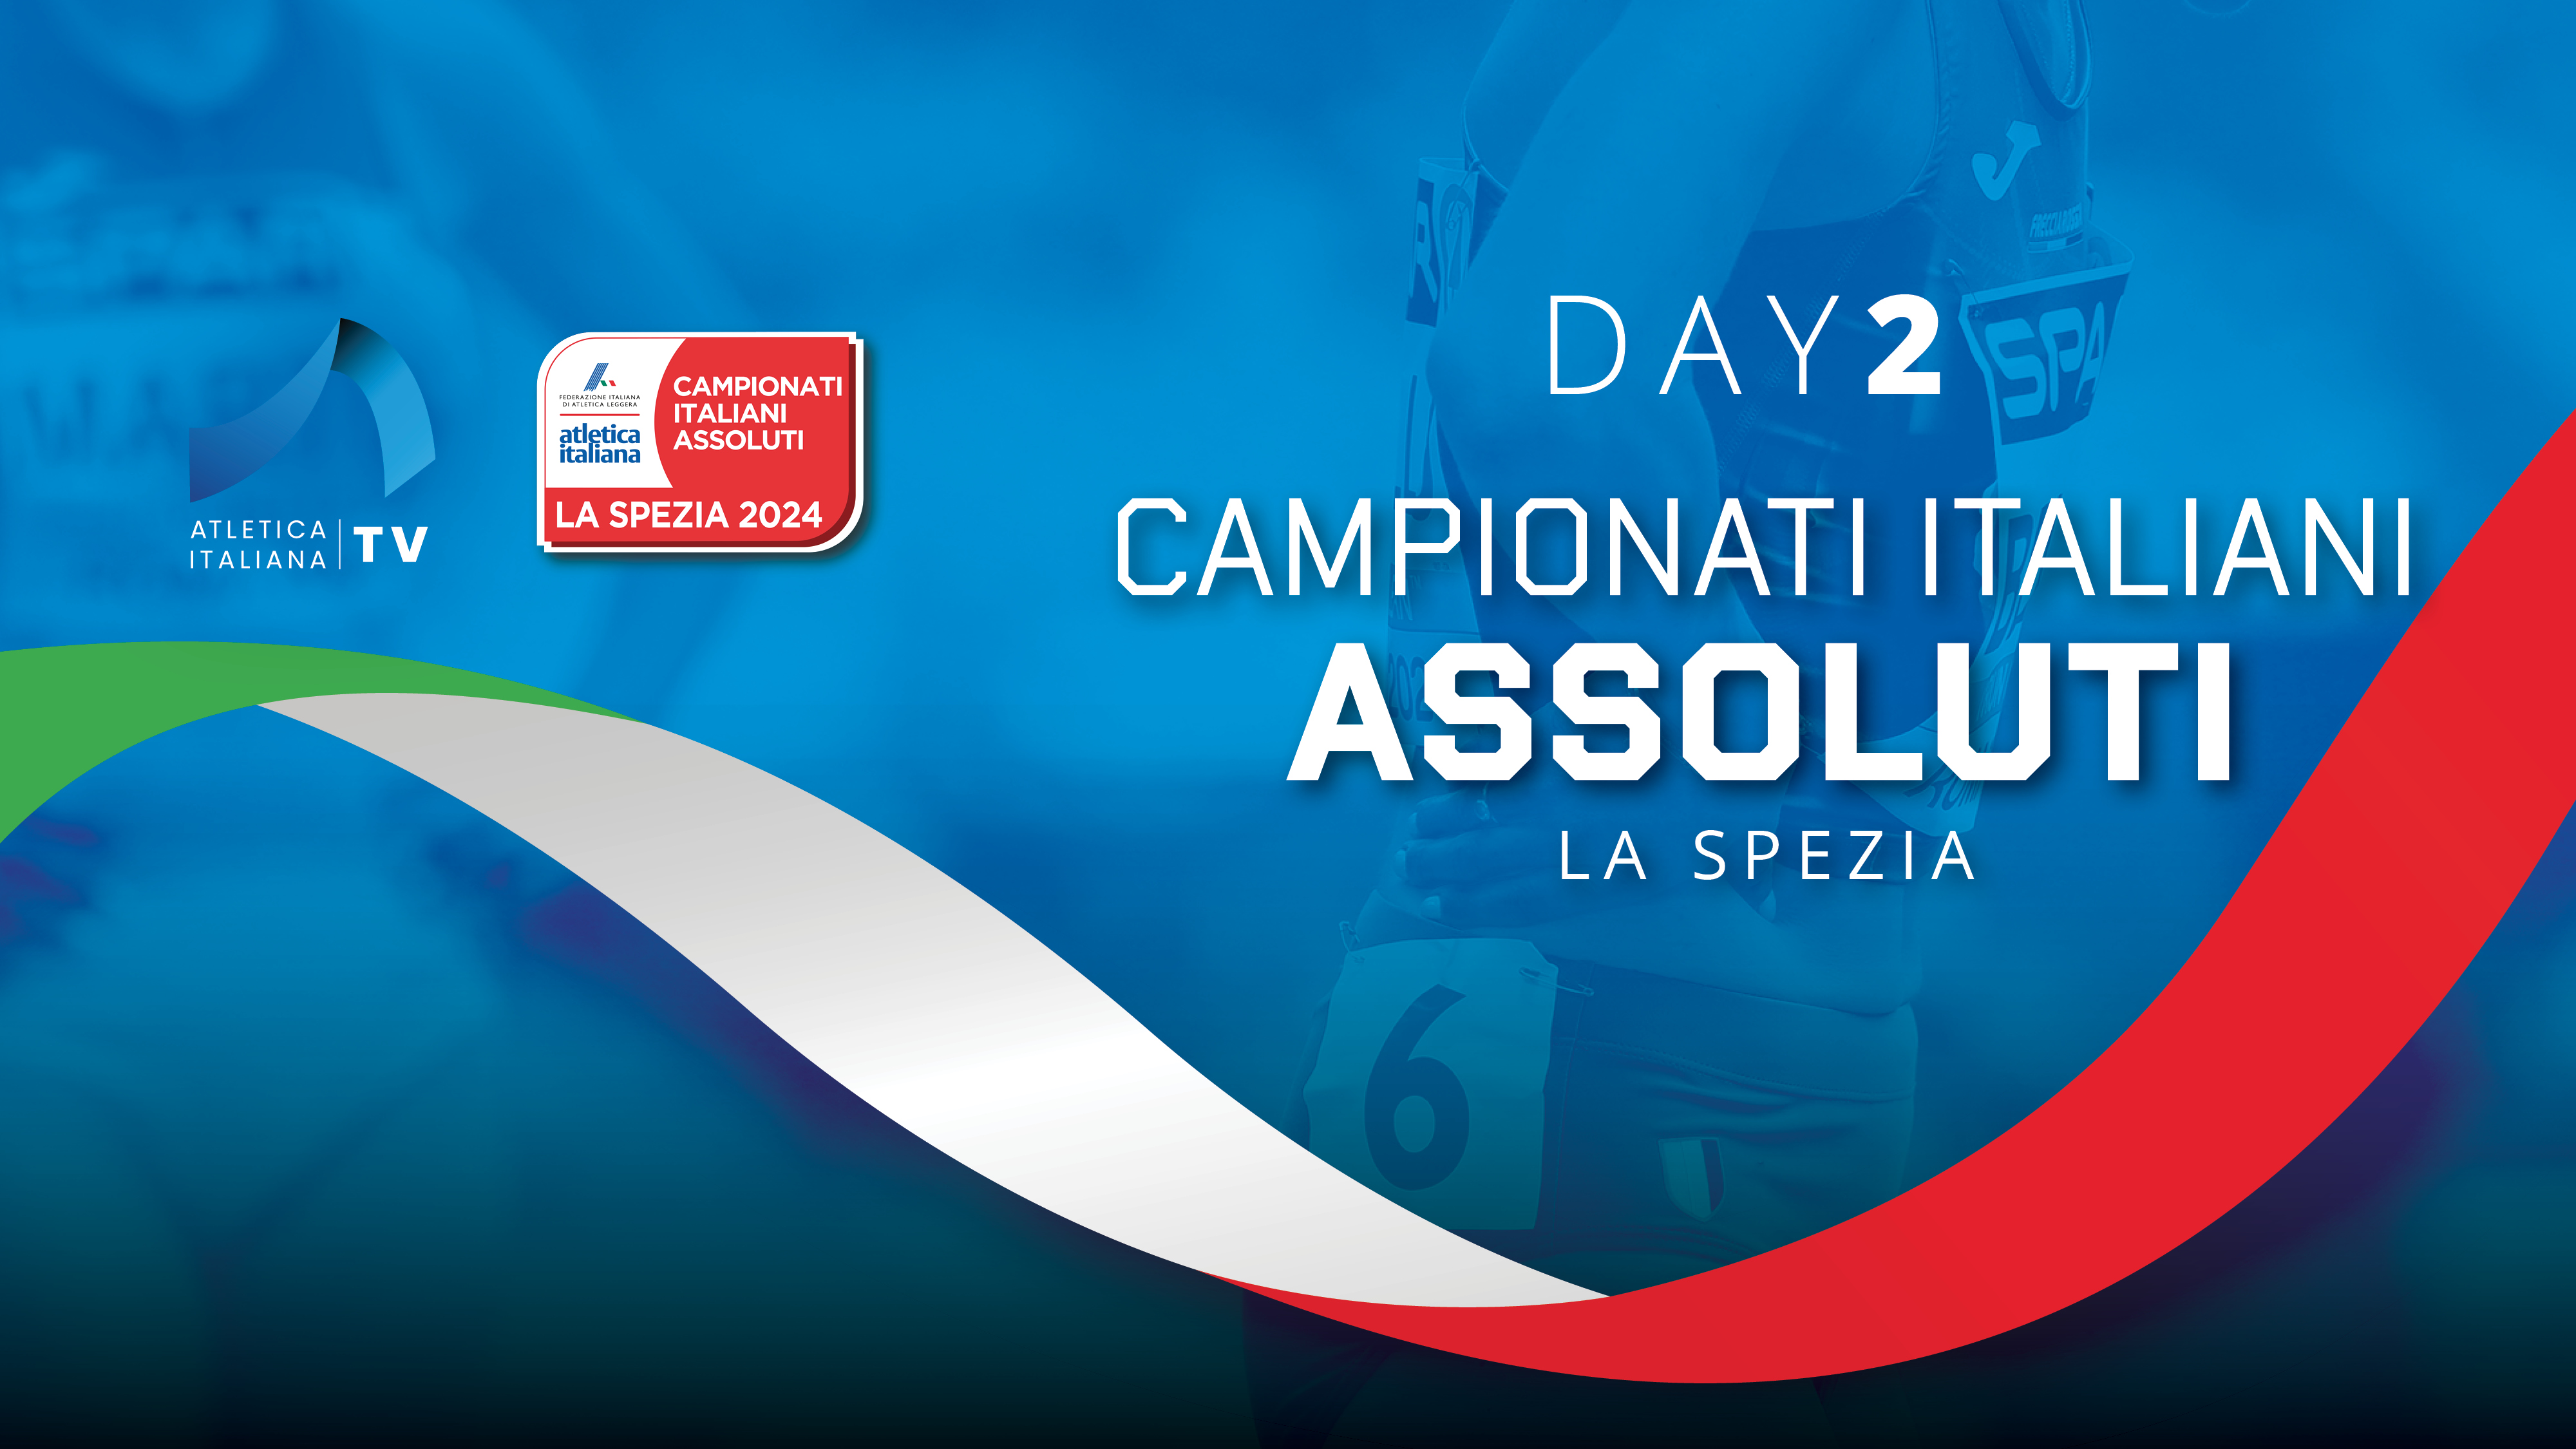 Campionati Italiani Assoluti - La Spezia - Day 2